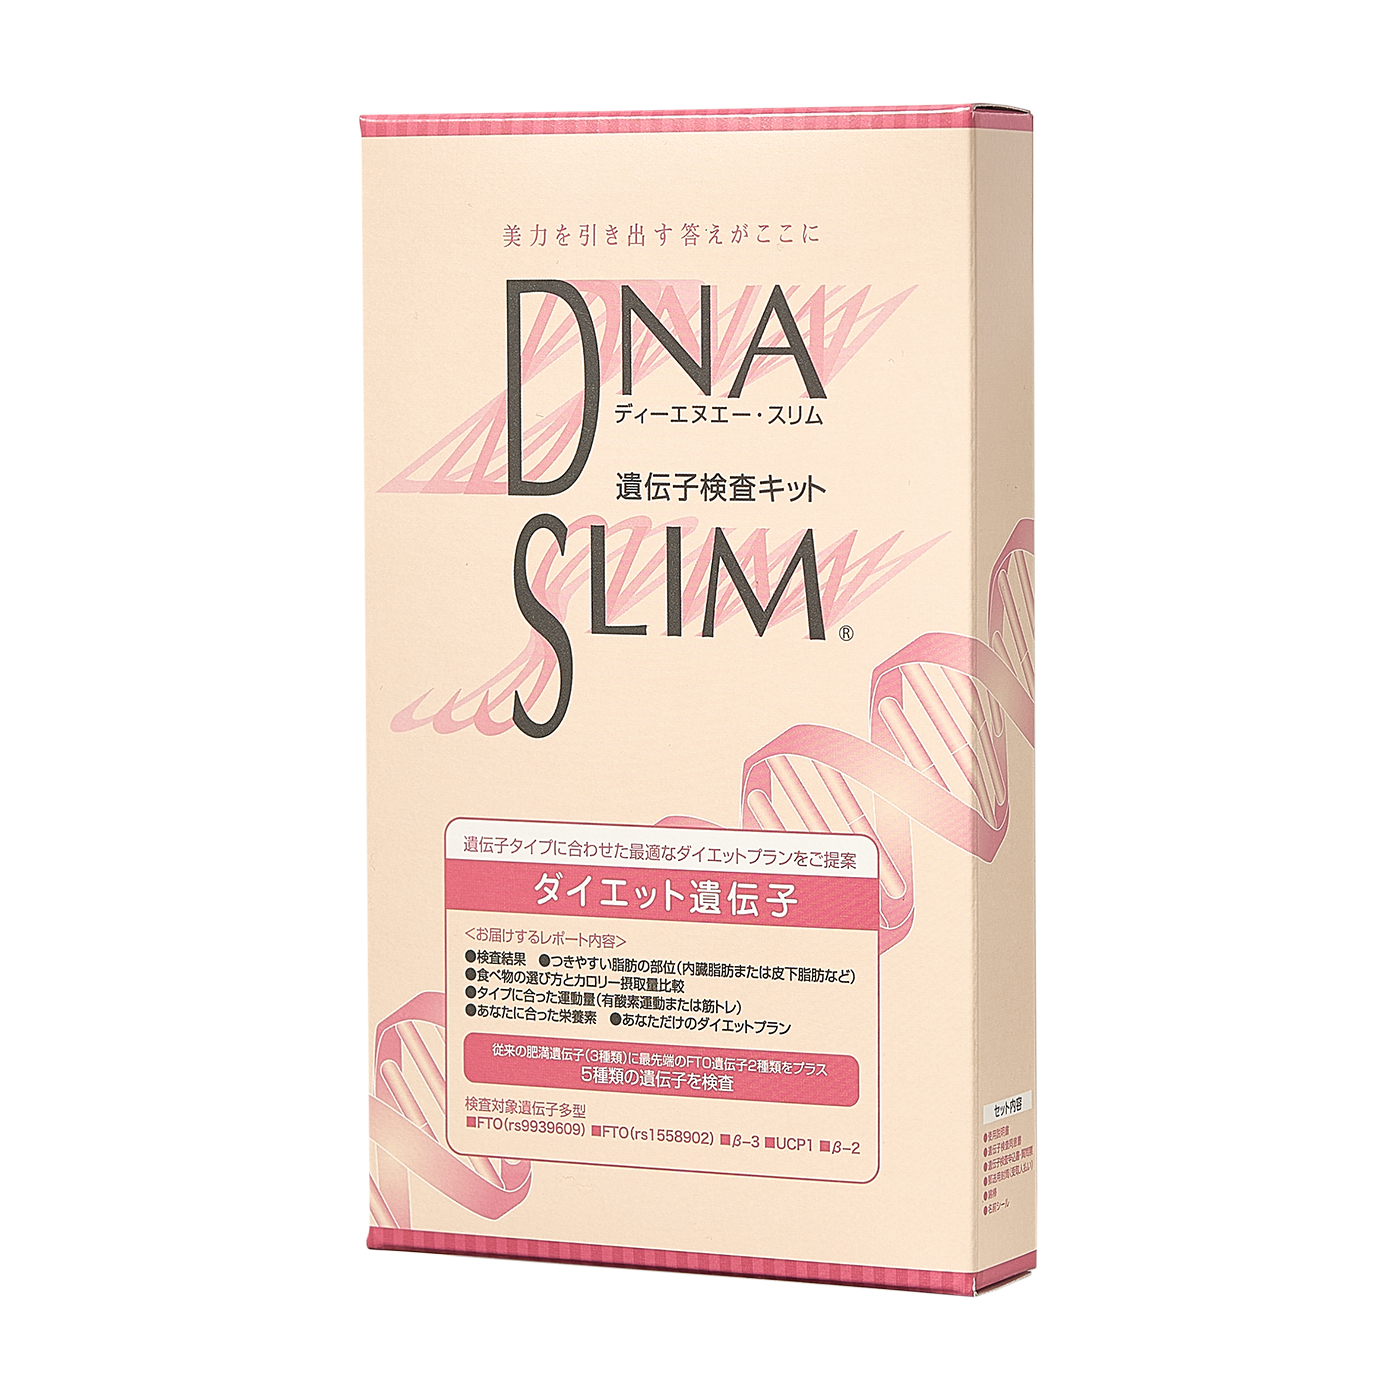 19891円 大人気新作 ハーセリーズ インターナショナル DNA SLIMダイエット遺伝子検査キット 6個セット